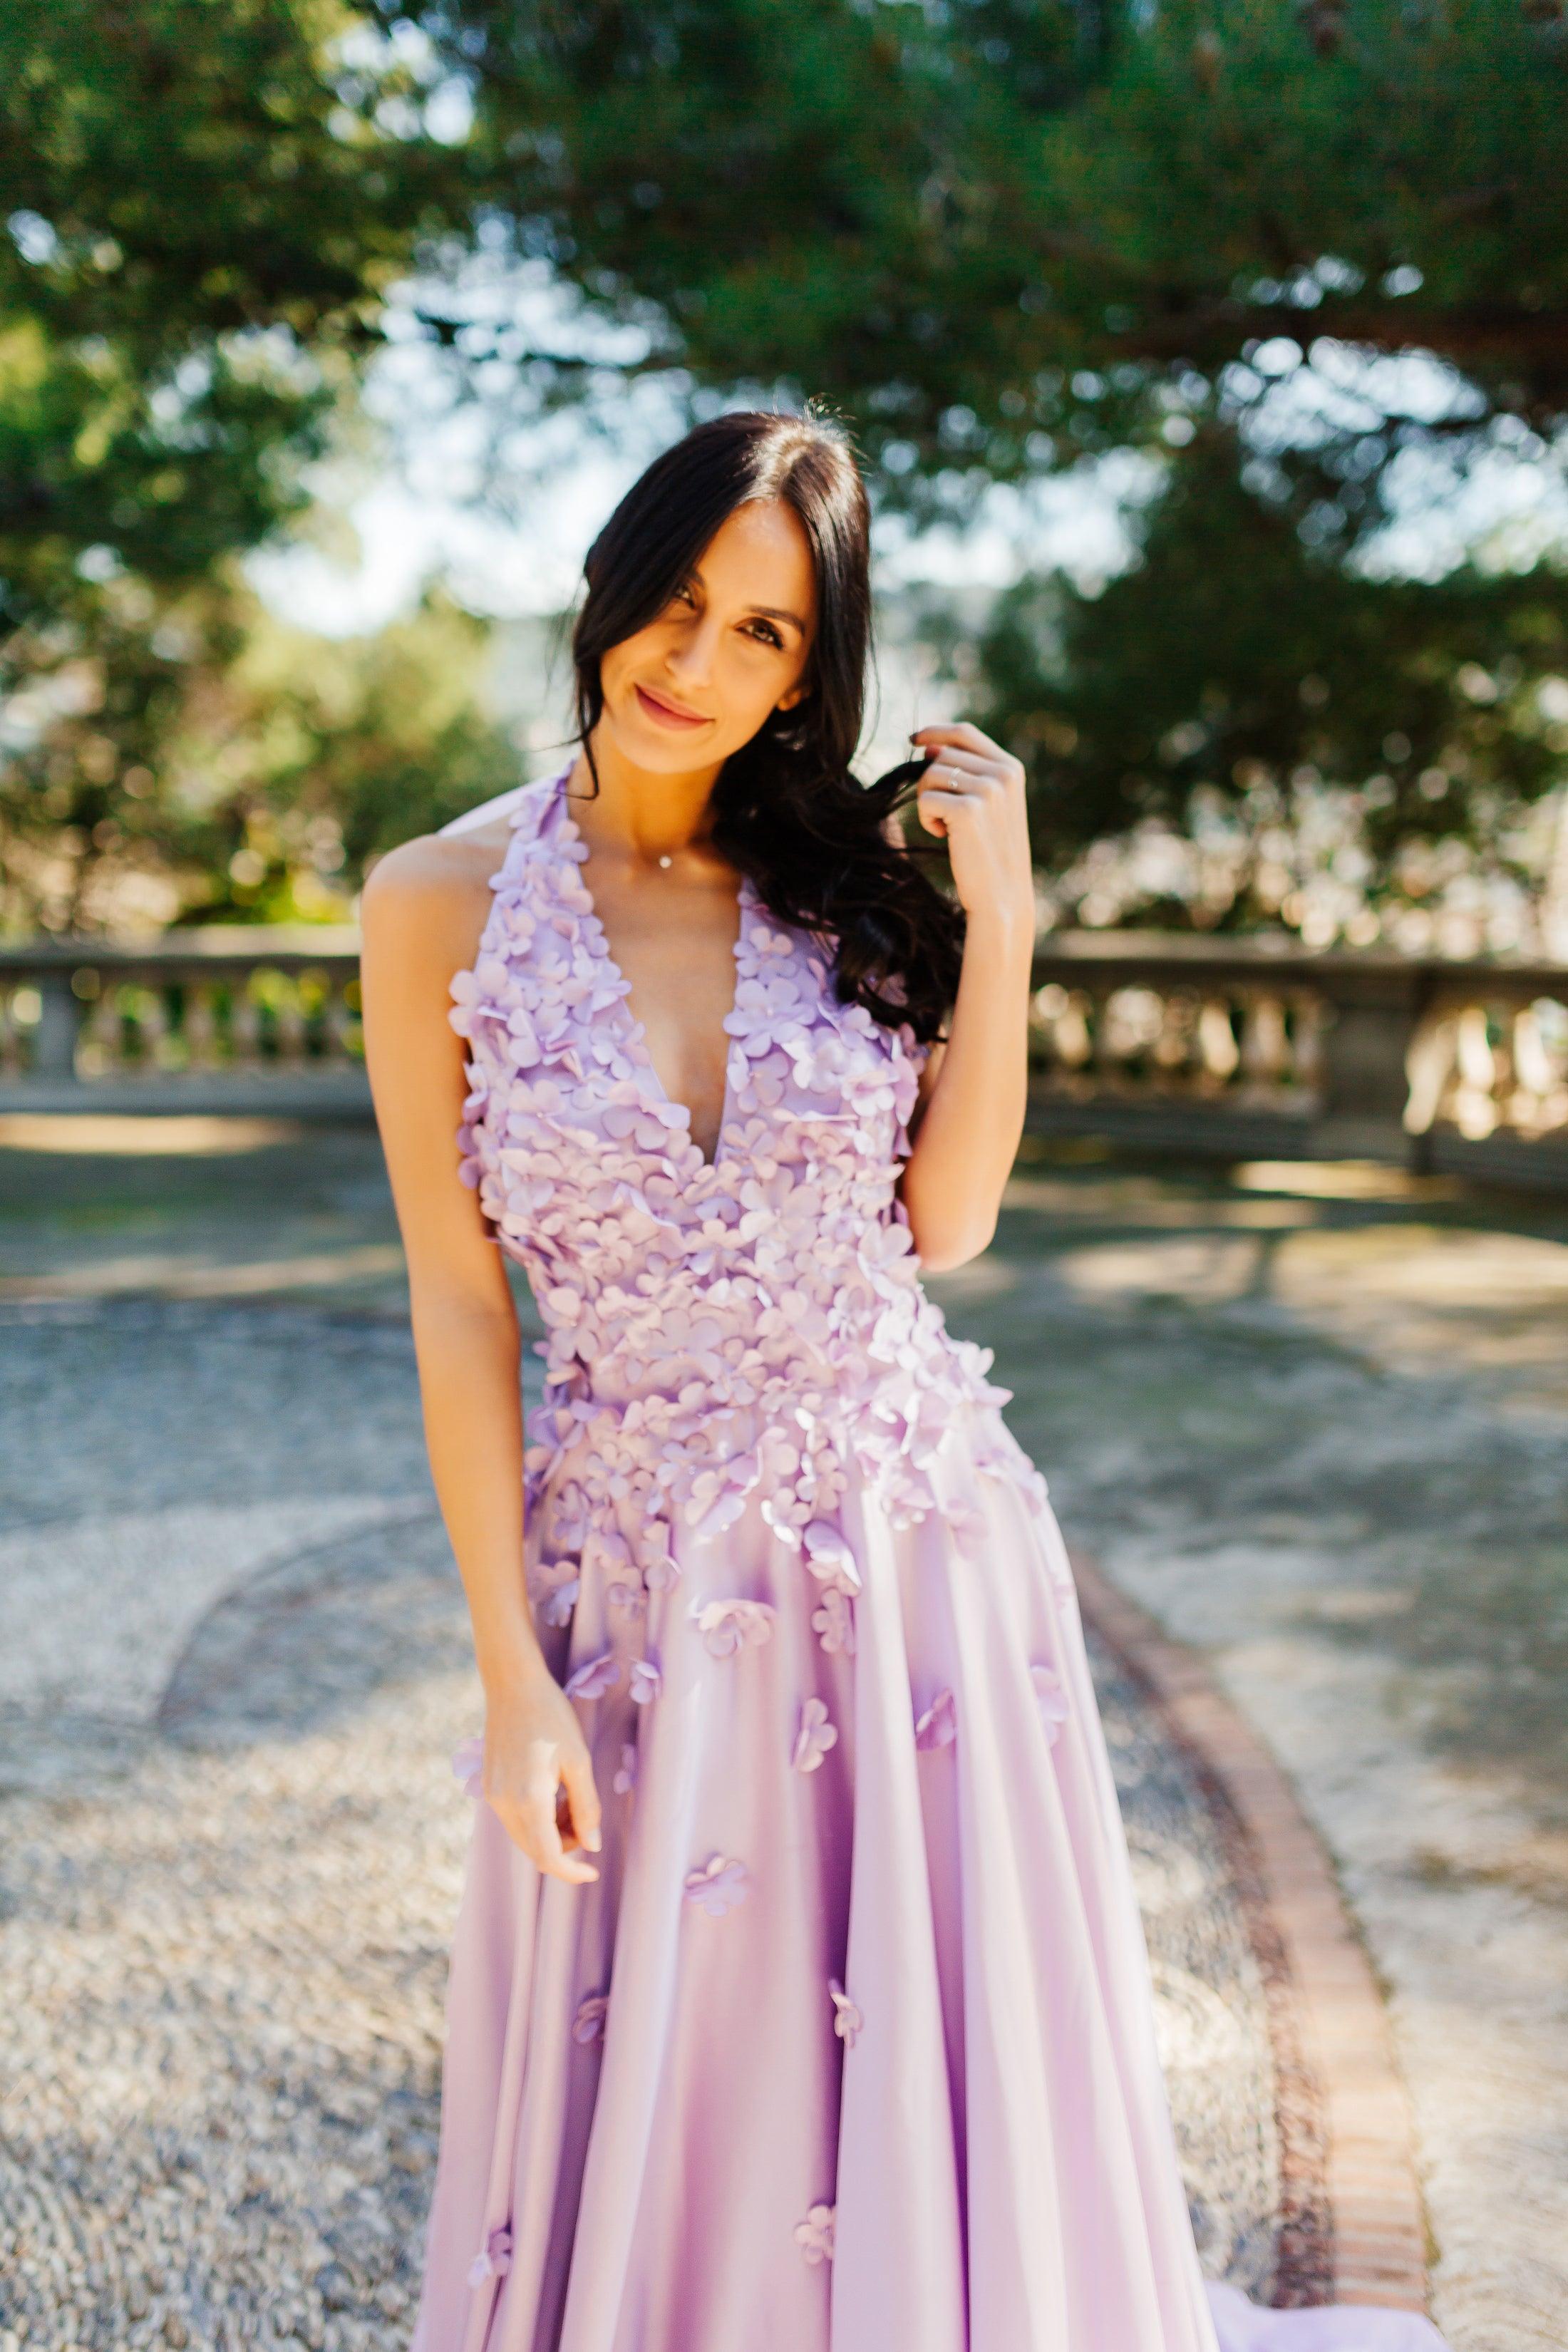 Halter Neck Wedding Dress | Lavender Wedding Gown | Dare and Dazzle